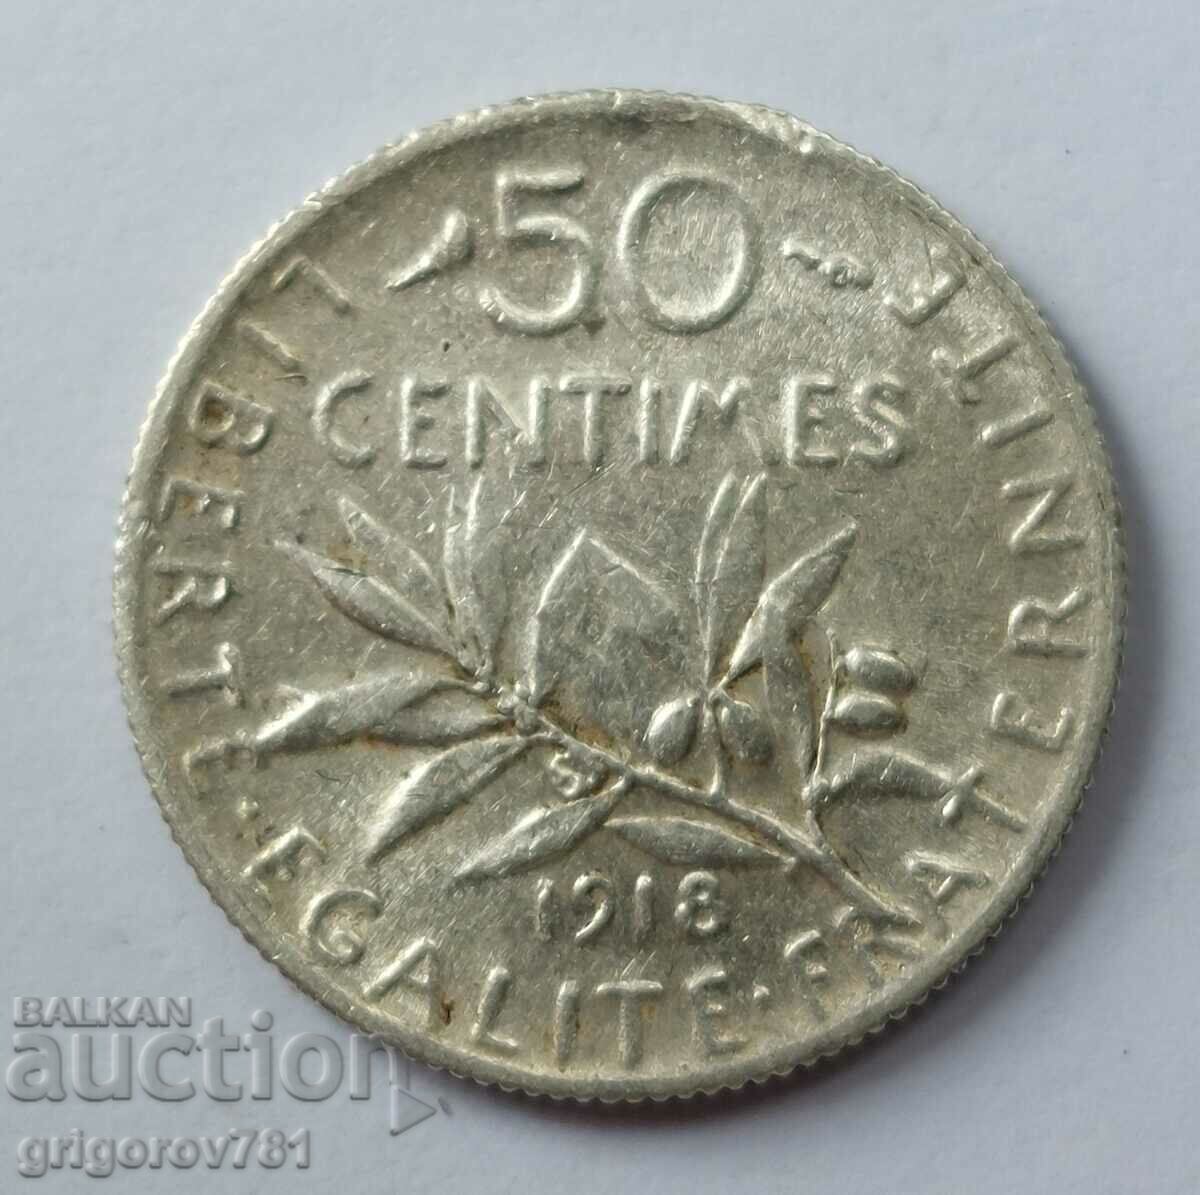 Ασημένιο 50 εκατοστά Γαλλία 1918 - ασημένιο νόμισμα №66